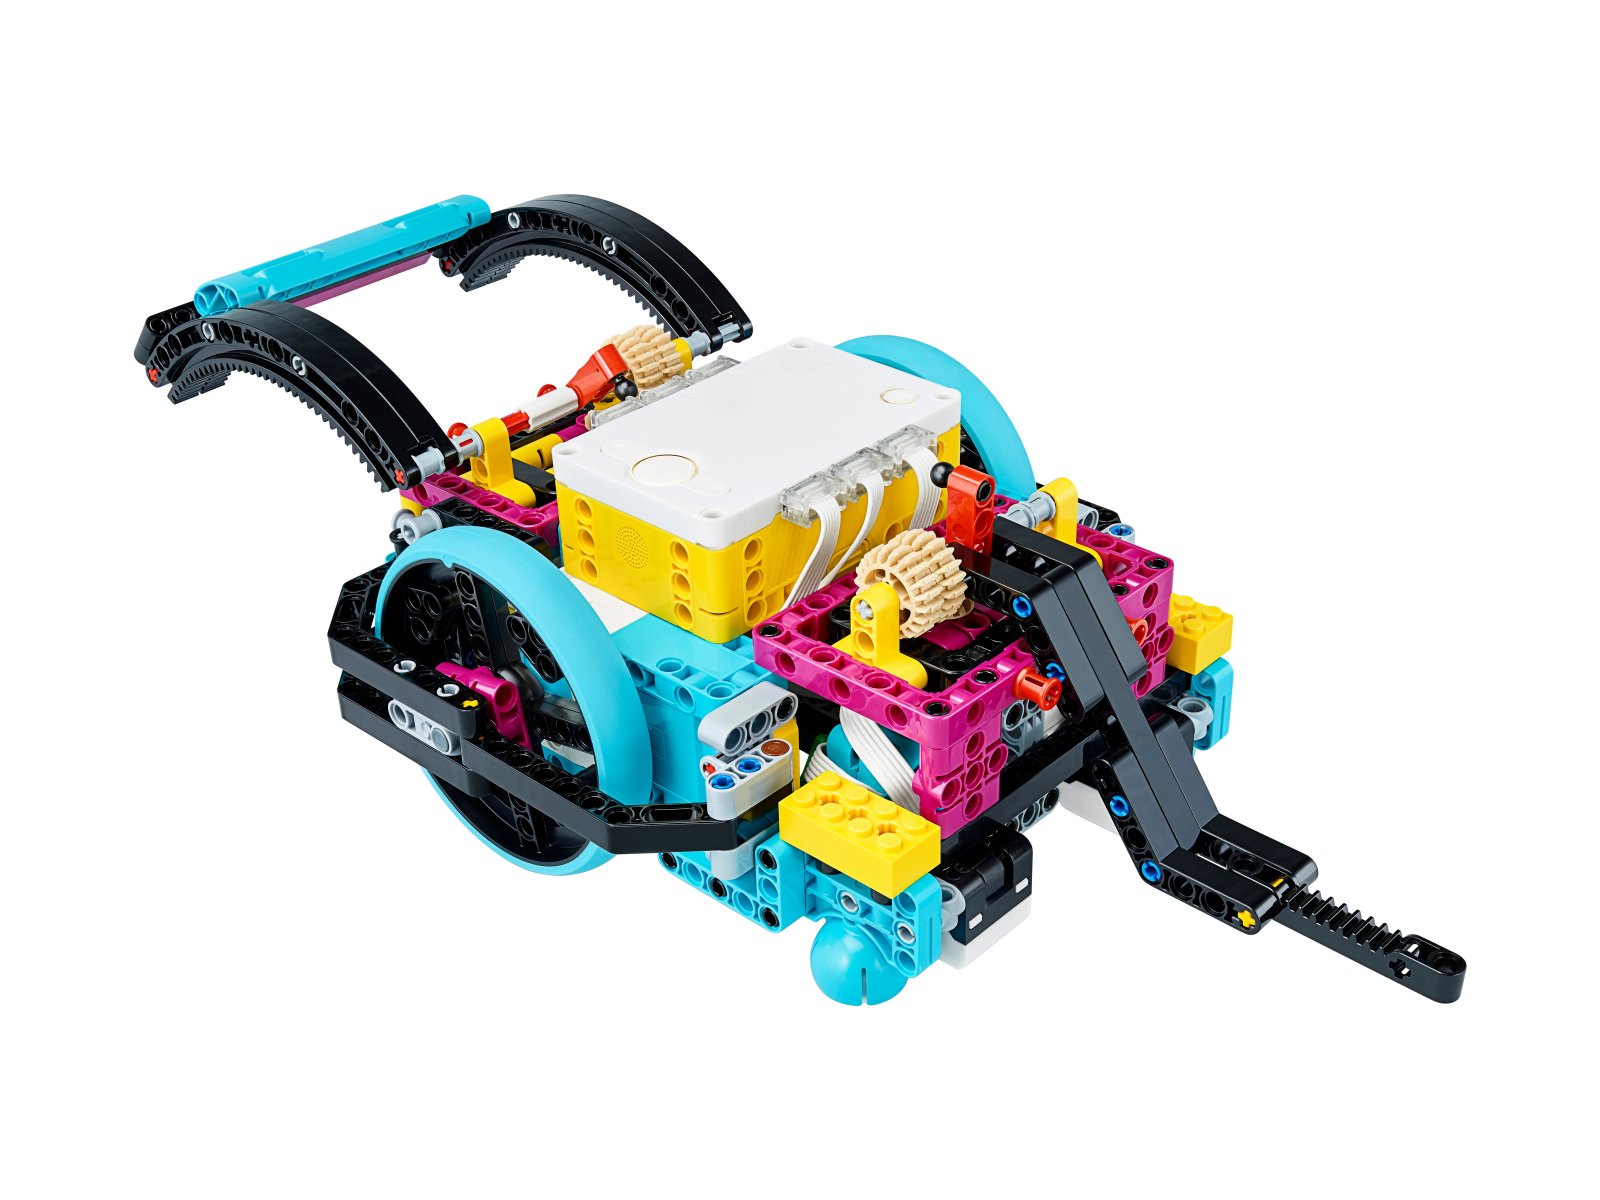 LEGO Education 45680 Zestaw dodatkowy SPIKE™ Prime